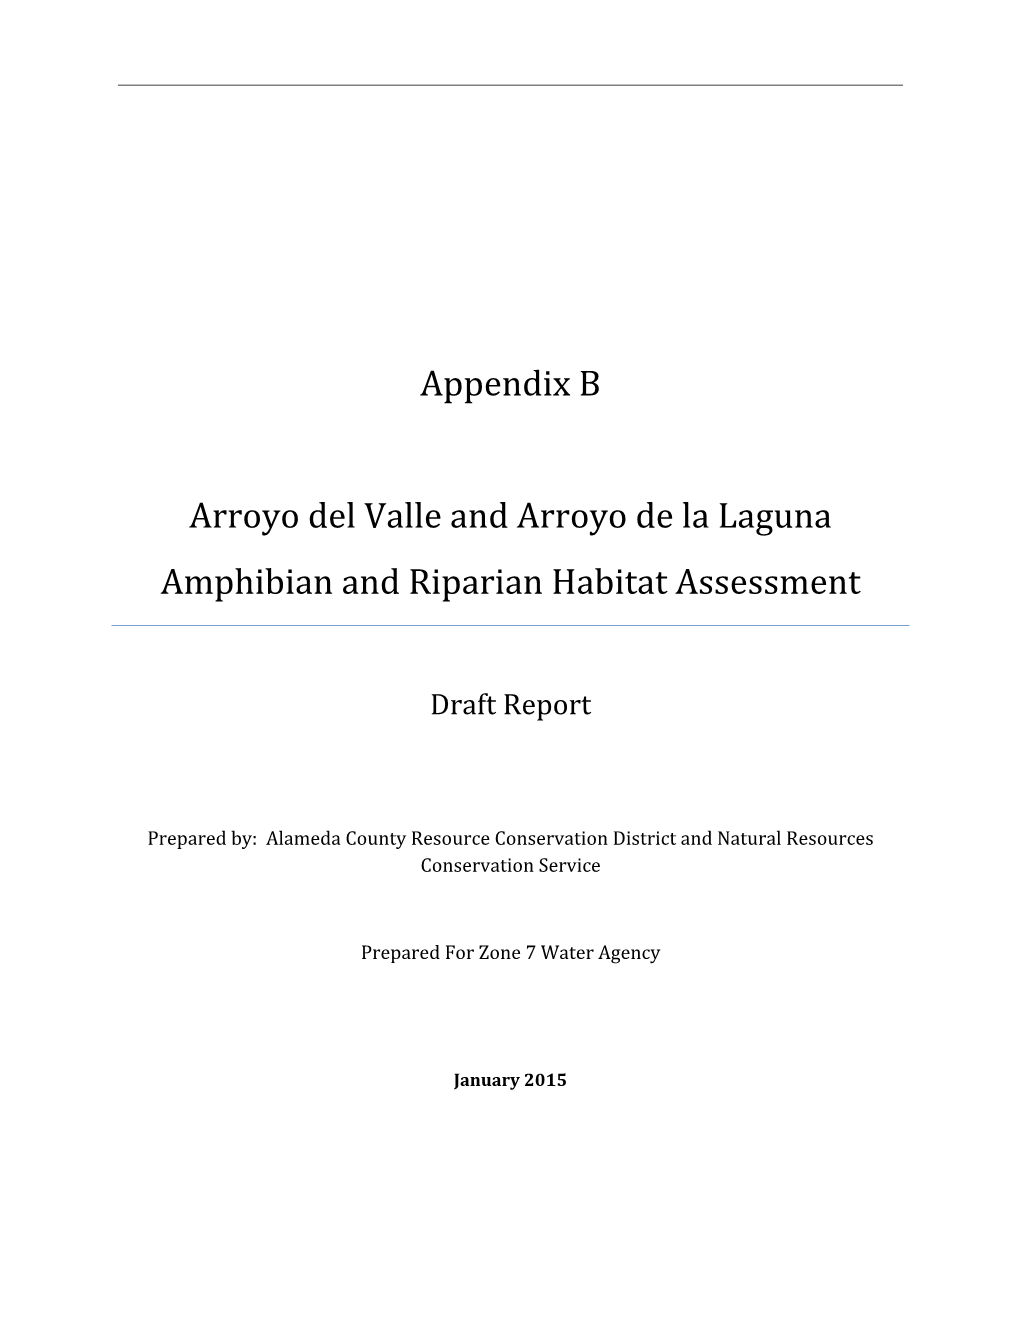 Appendix B Arroyo Del Valle and Arroyo De La Laguna Amphibian and Riparian Habitat Assessment